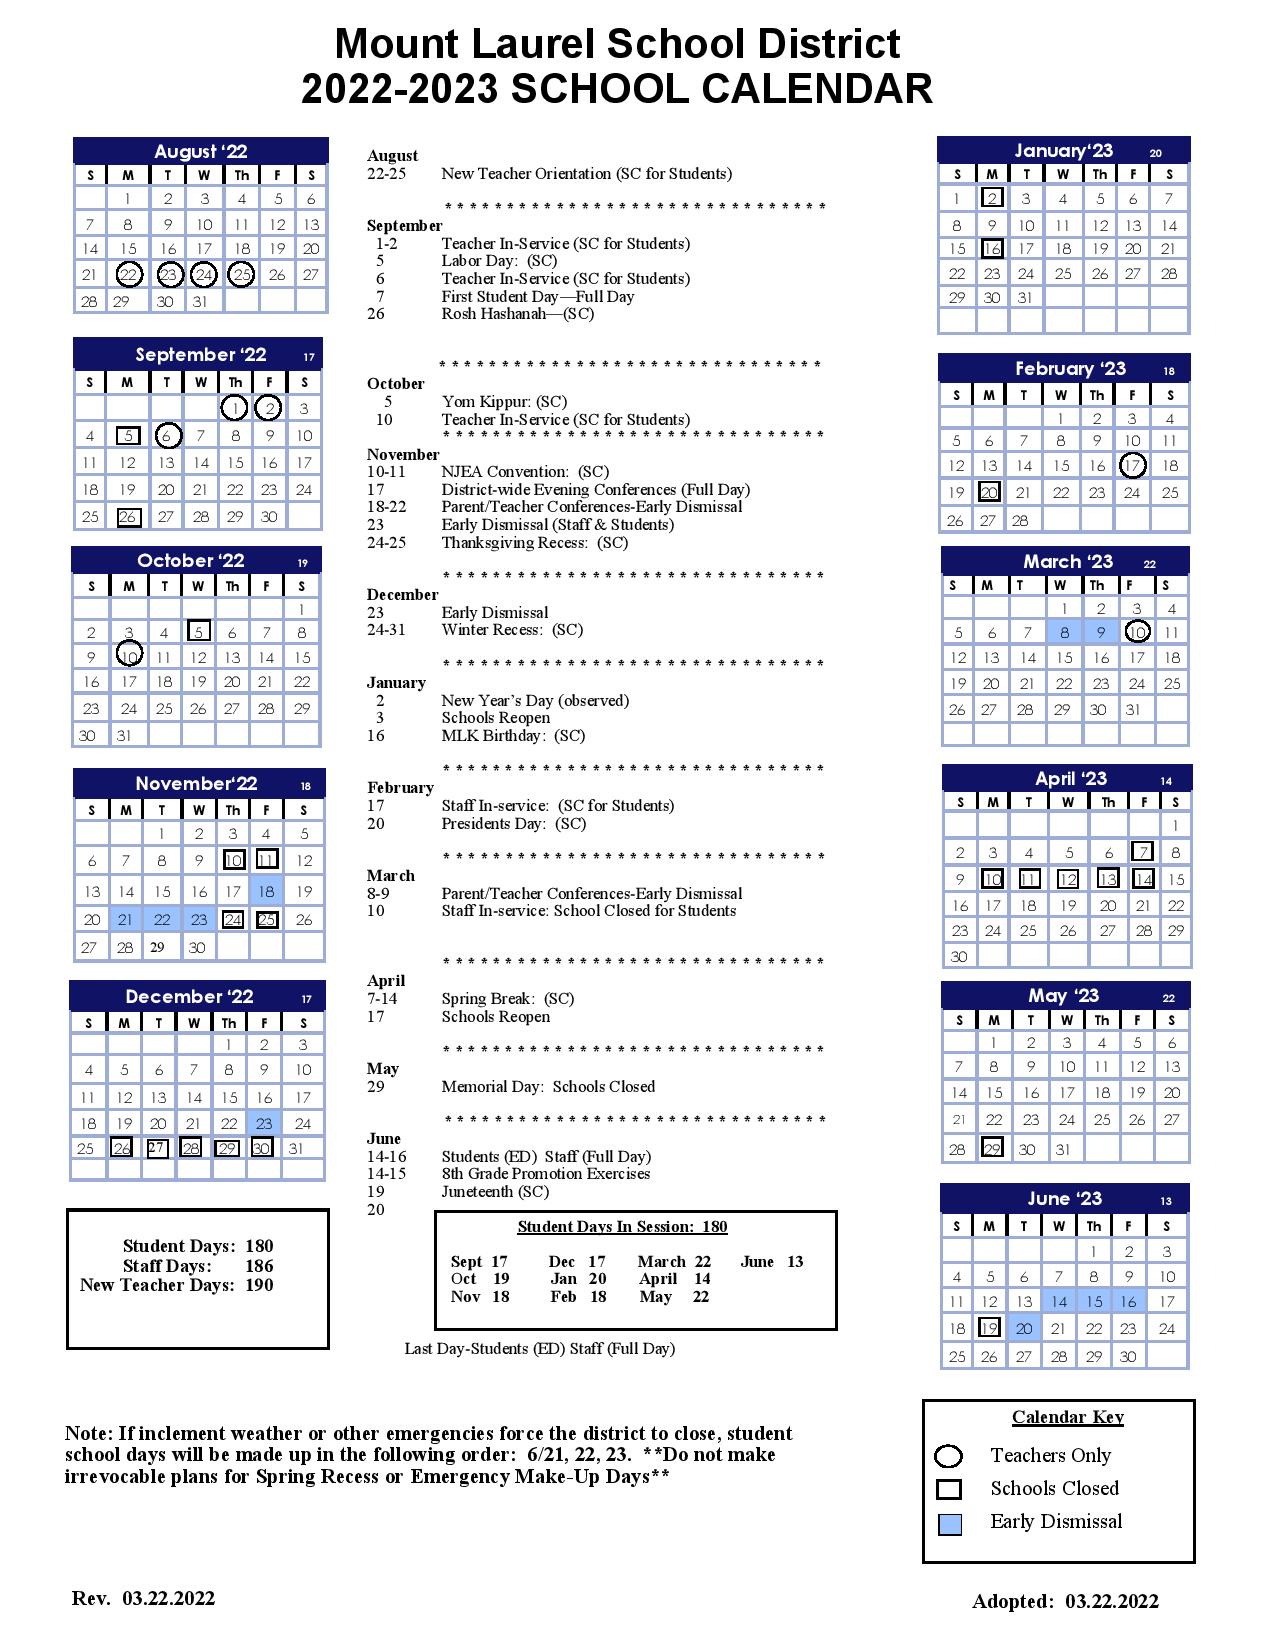 Mount Laurel Schools Calendar 2022 and 2023